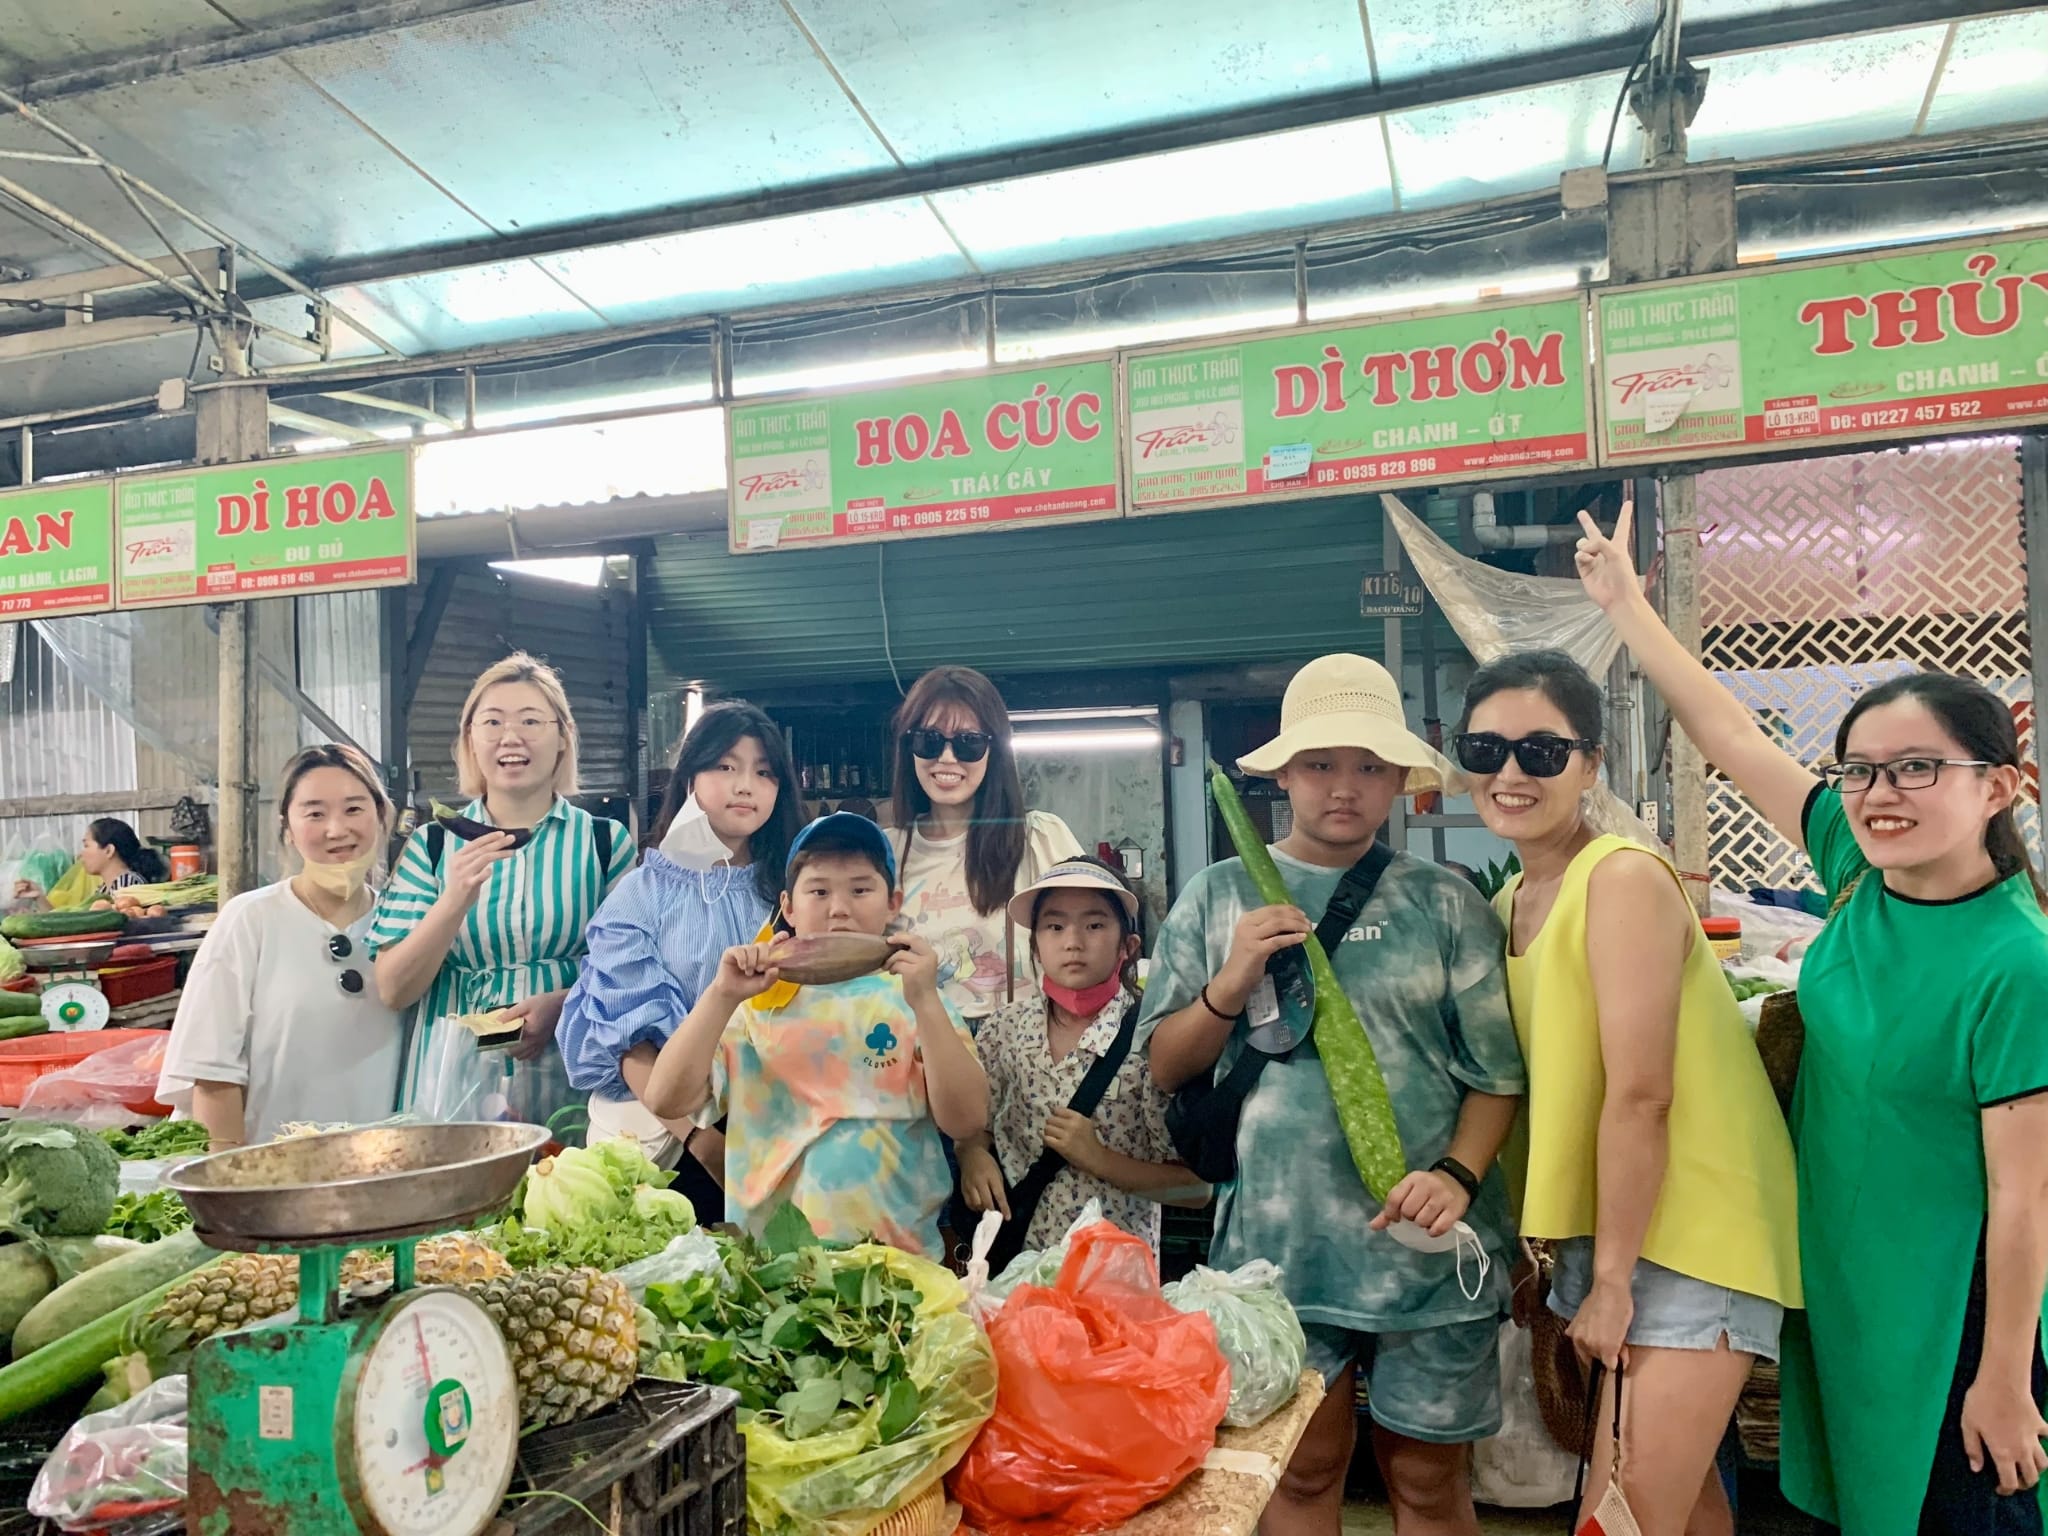 Discover Da Nang market